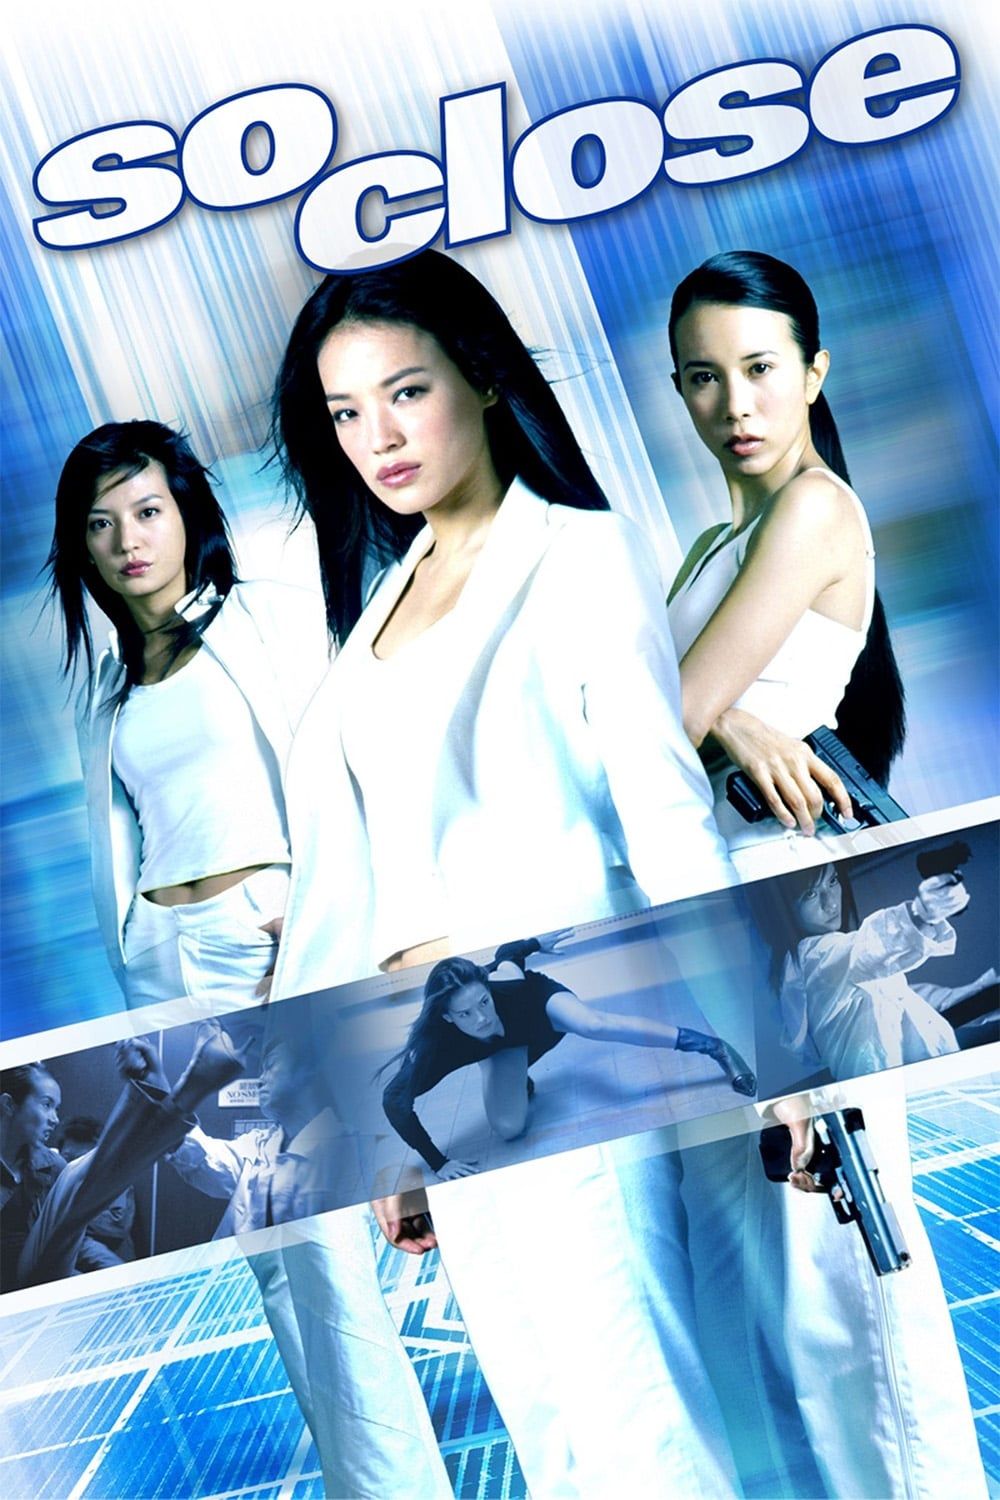 Watch Lung do kei yuen (2005) Full Movie Free Online - Plex